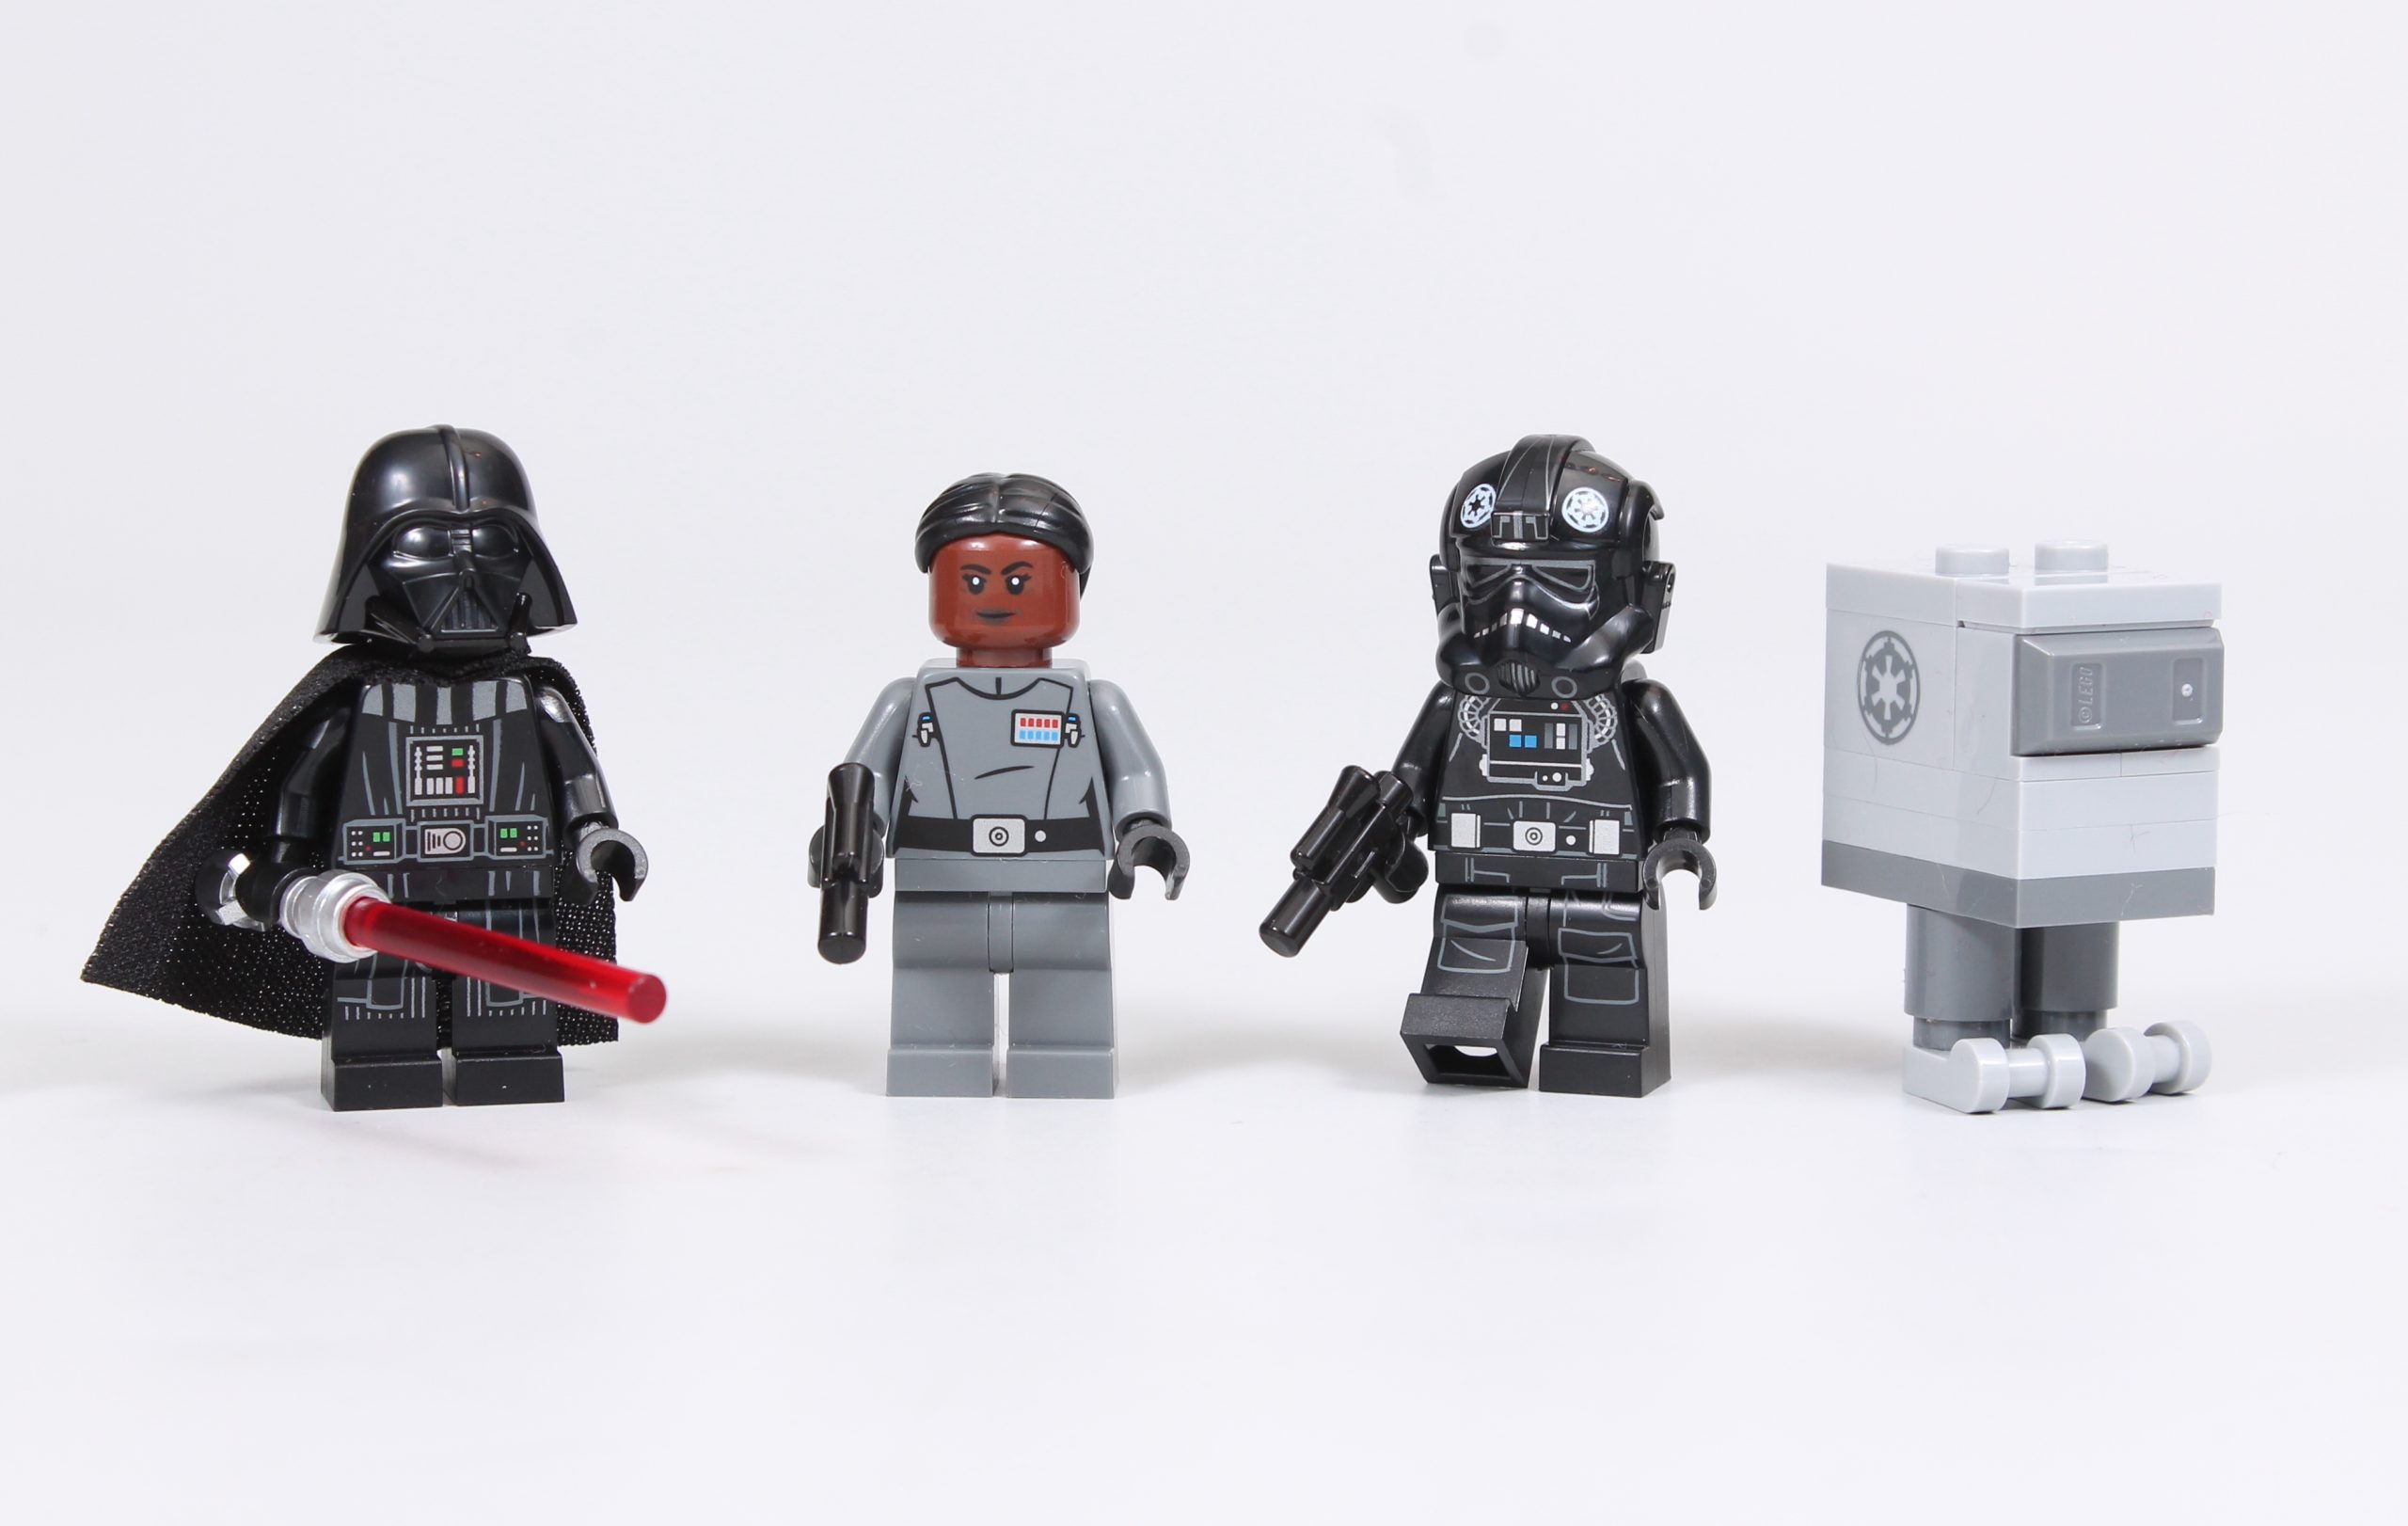 LEGO Star Wars - Bombardero TIE - 75347, Lego Star Wars